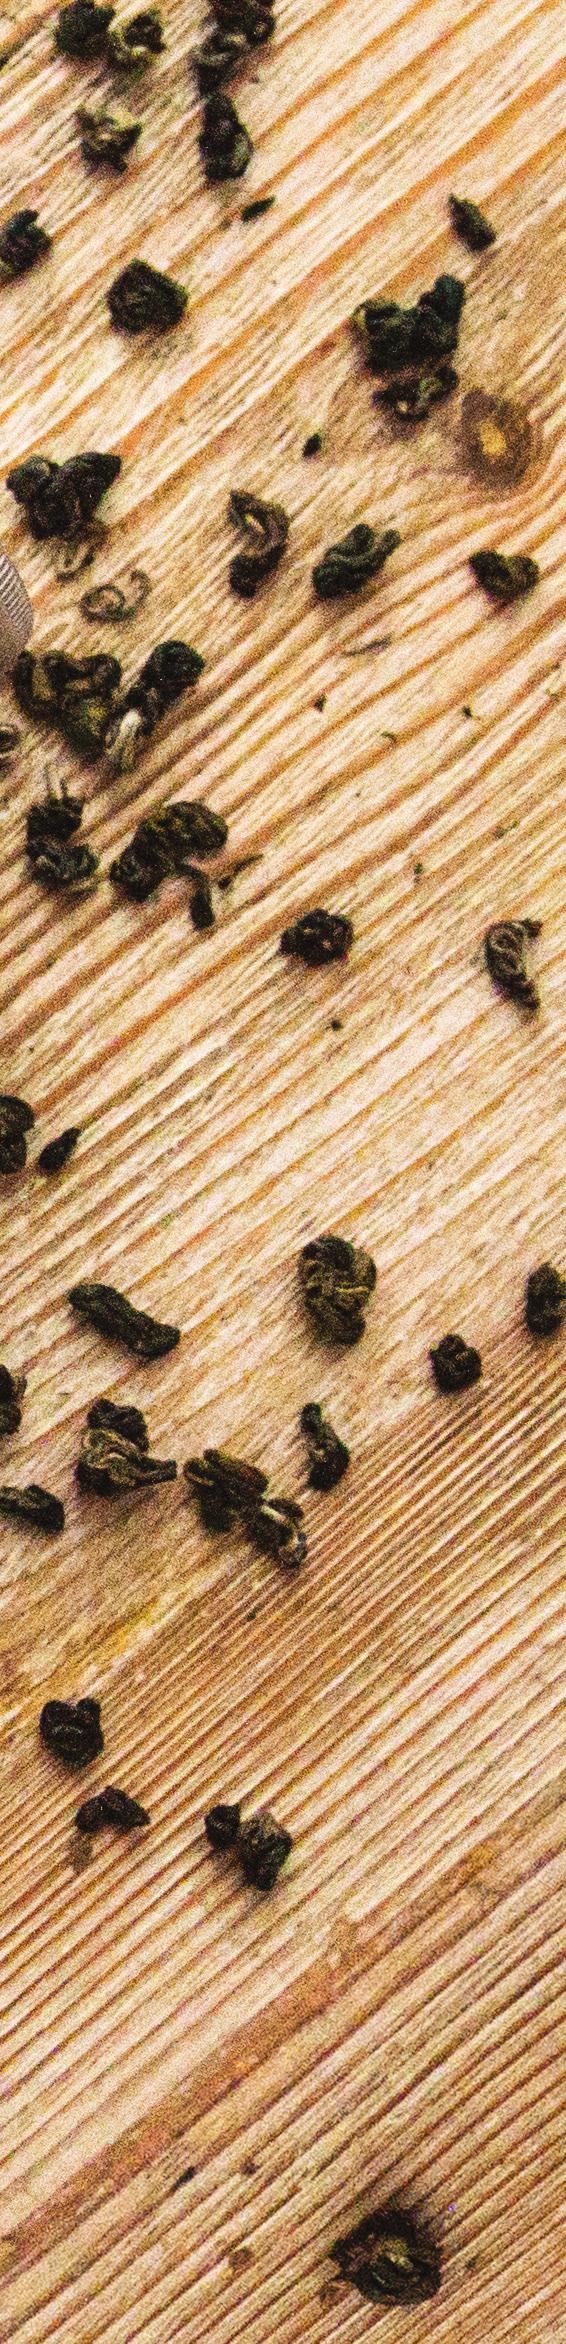 06. Tea Ritual Zestaw zawiera detoksykujący Rytuał Herbaciany o orzeźwiającym zapachu zielonej herbaty. Składa się z żelu peelingująco-myjącego, musu do ciała oraz maski do twarzy.